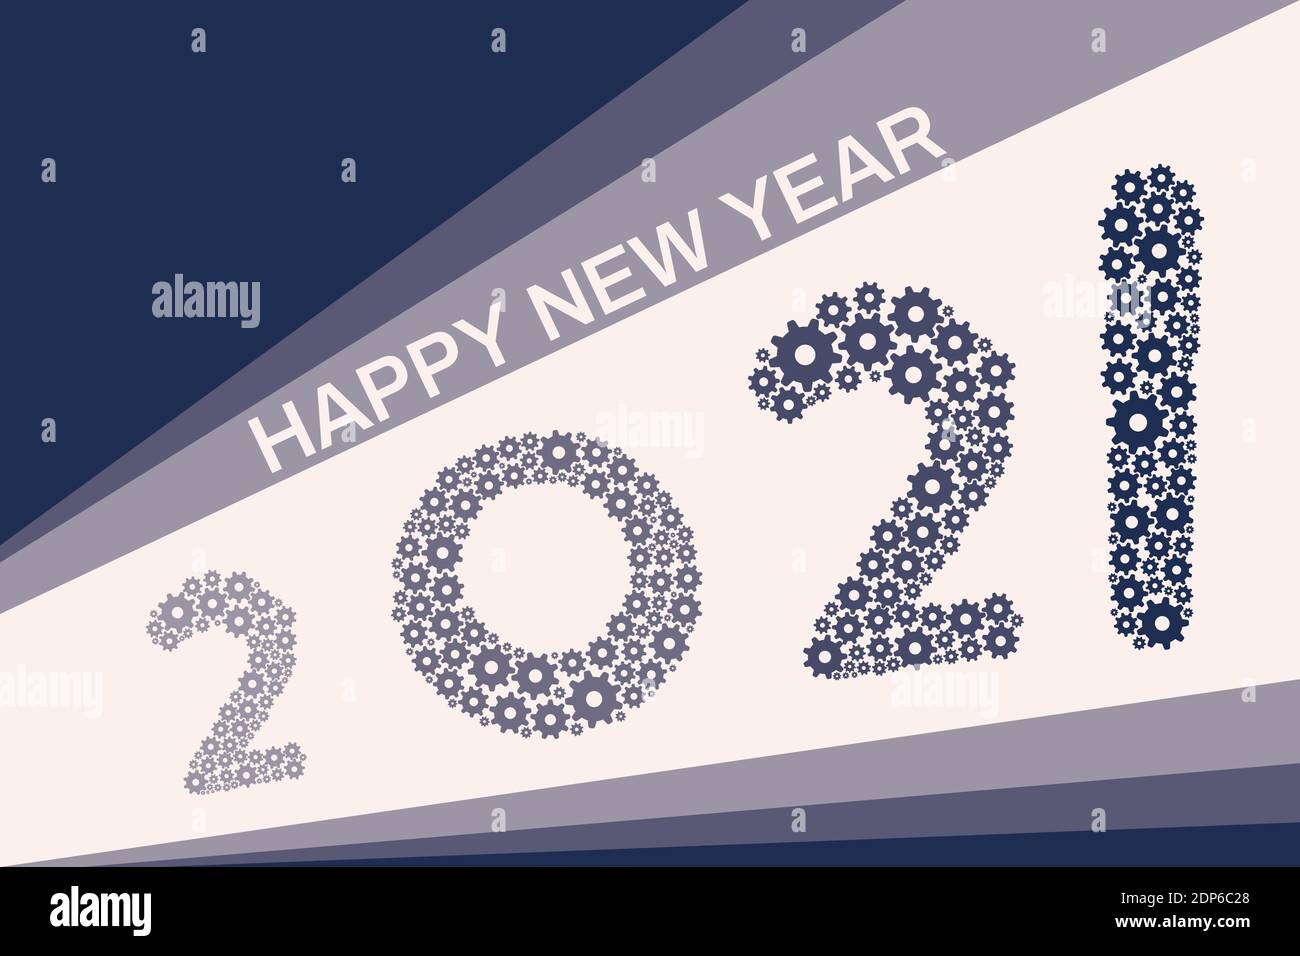 Illustration vectorielle du design de carte de vœux Happy New Year 2021, utilisant le concept d'engrenage mécanique Illustration de Vecteur